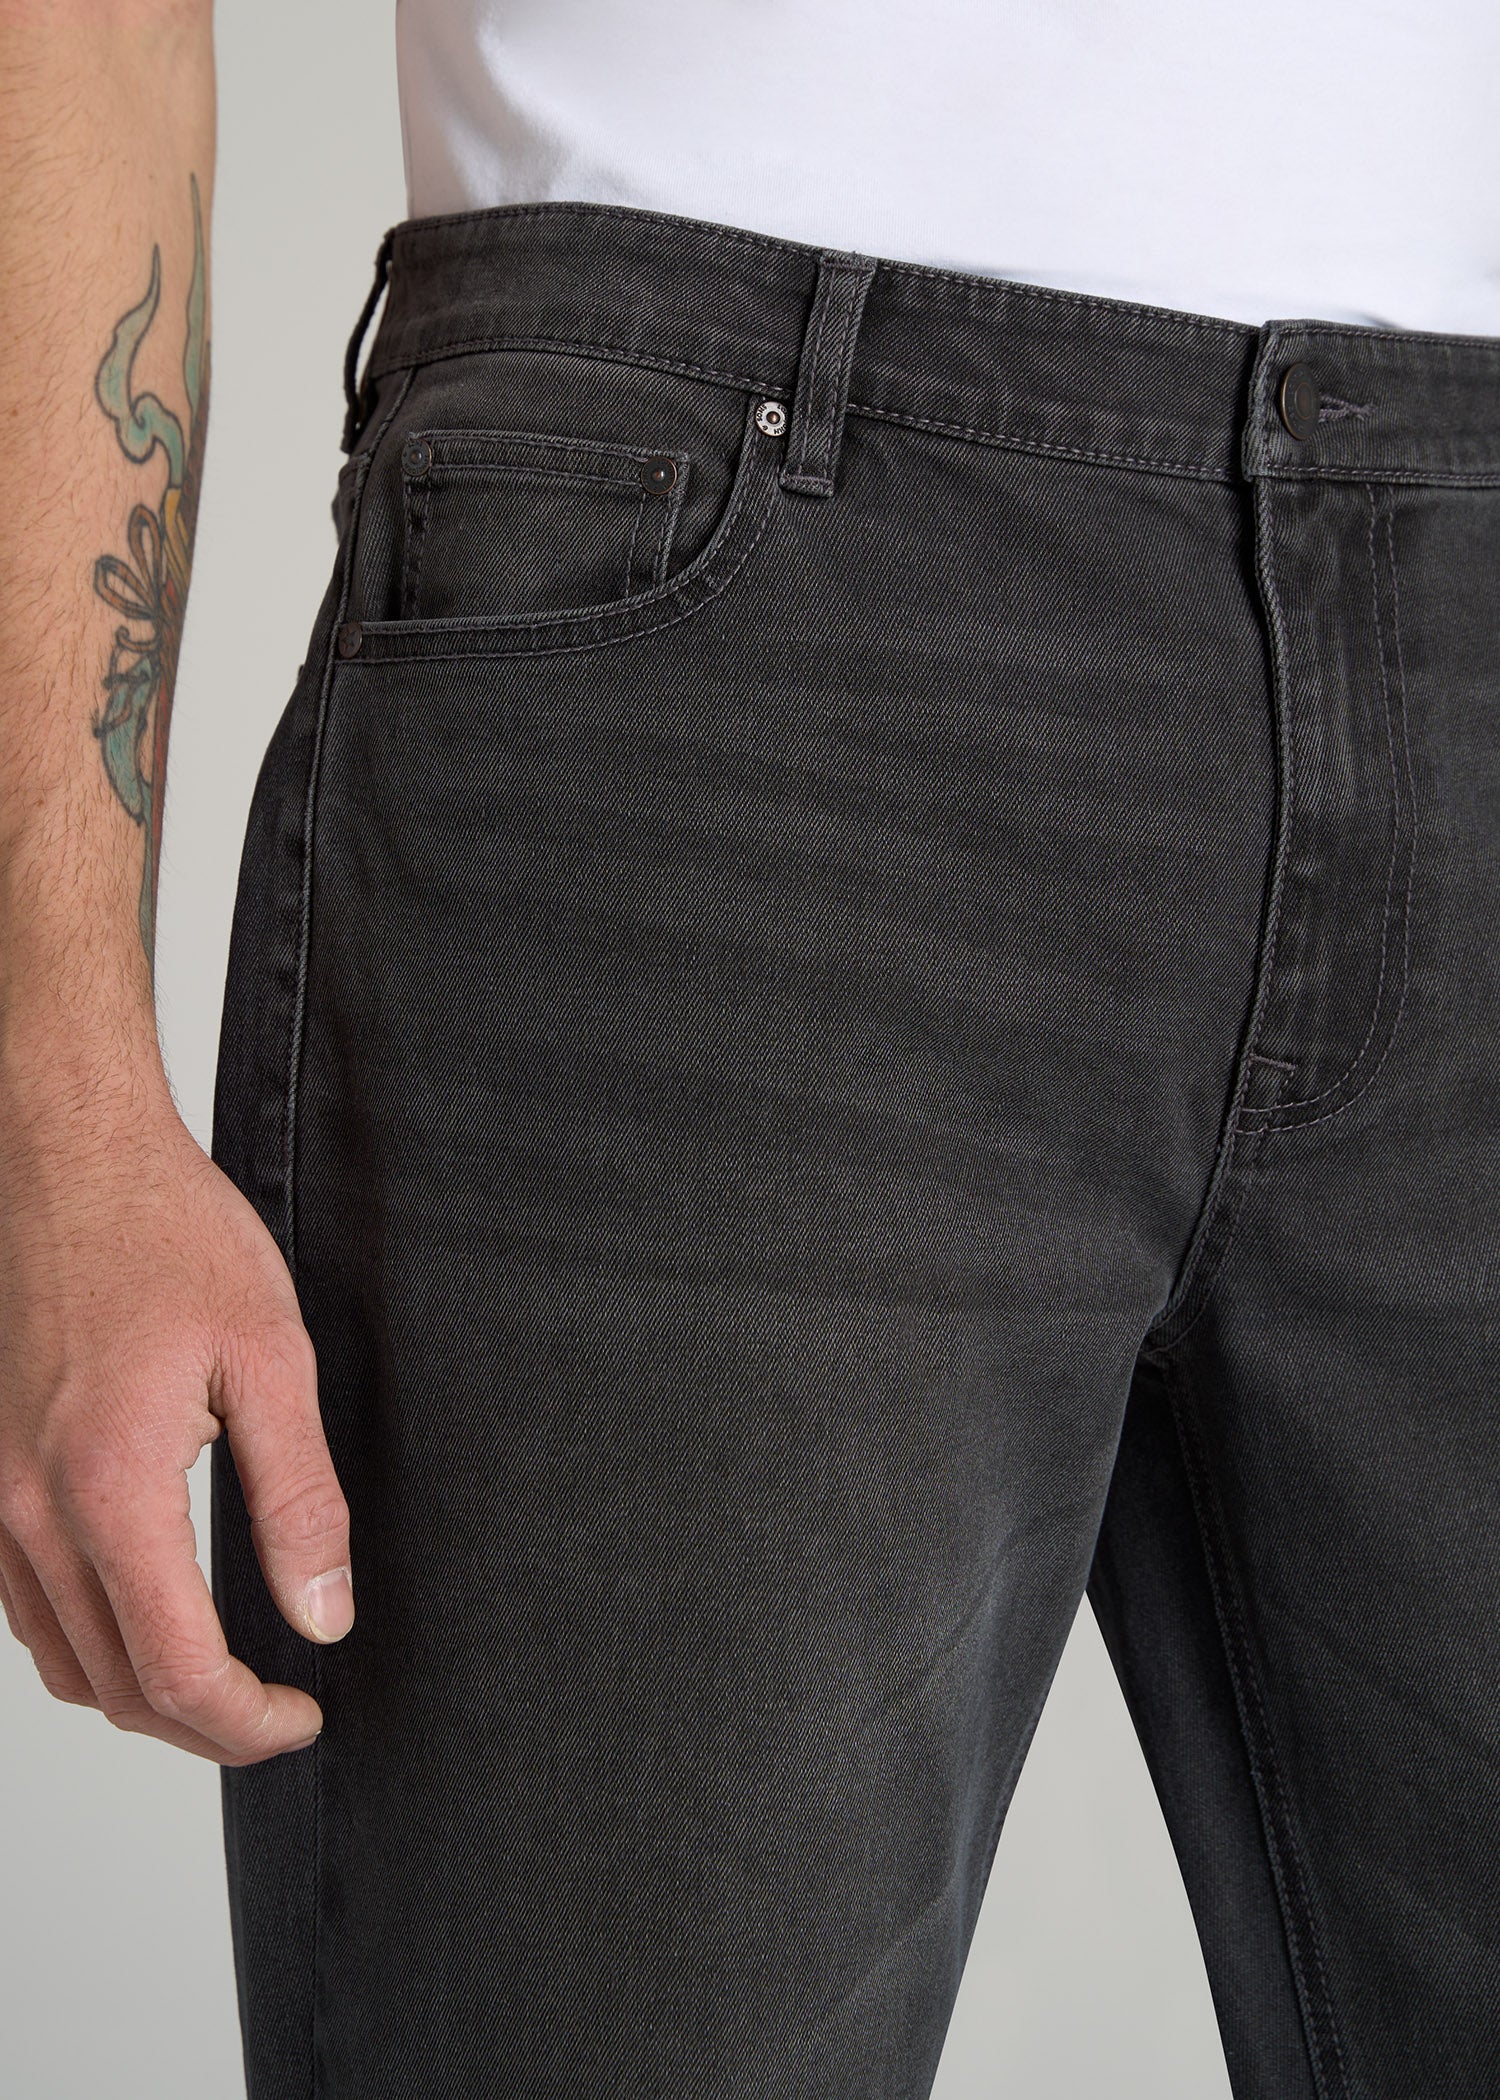     American-Tall-Men-LJ-Straight-Leg-Jean-Industrial-Grey-pocket